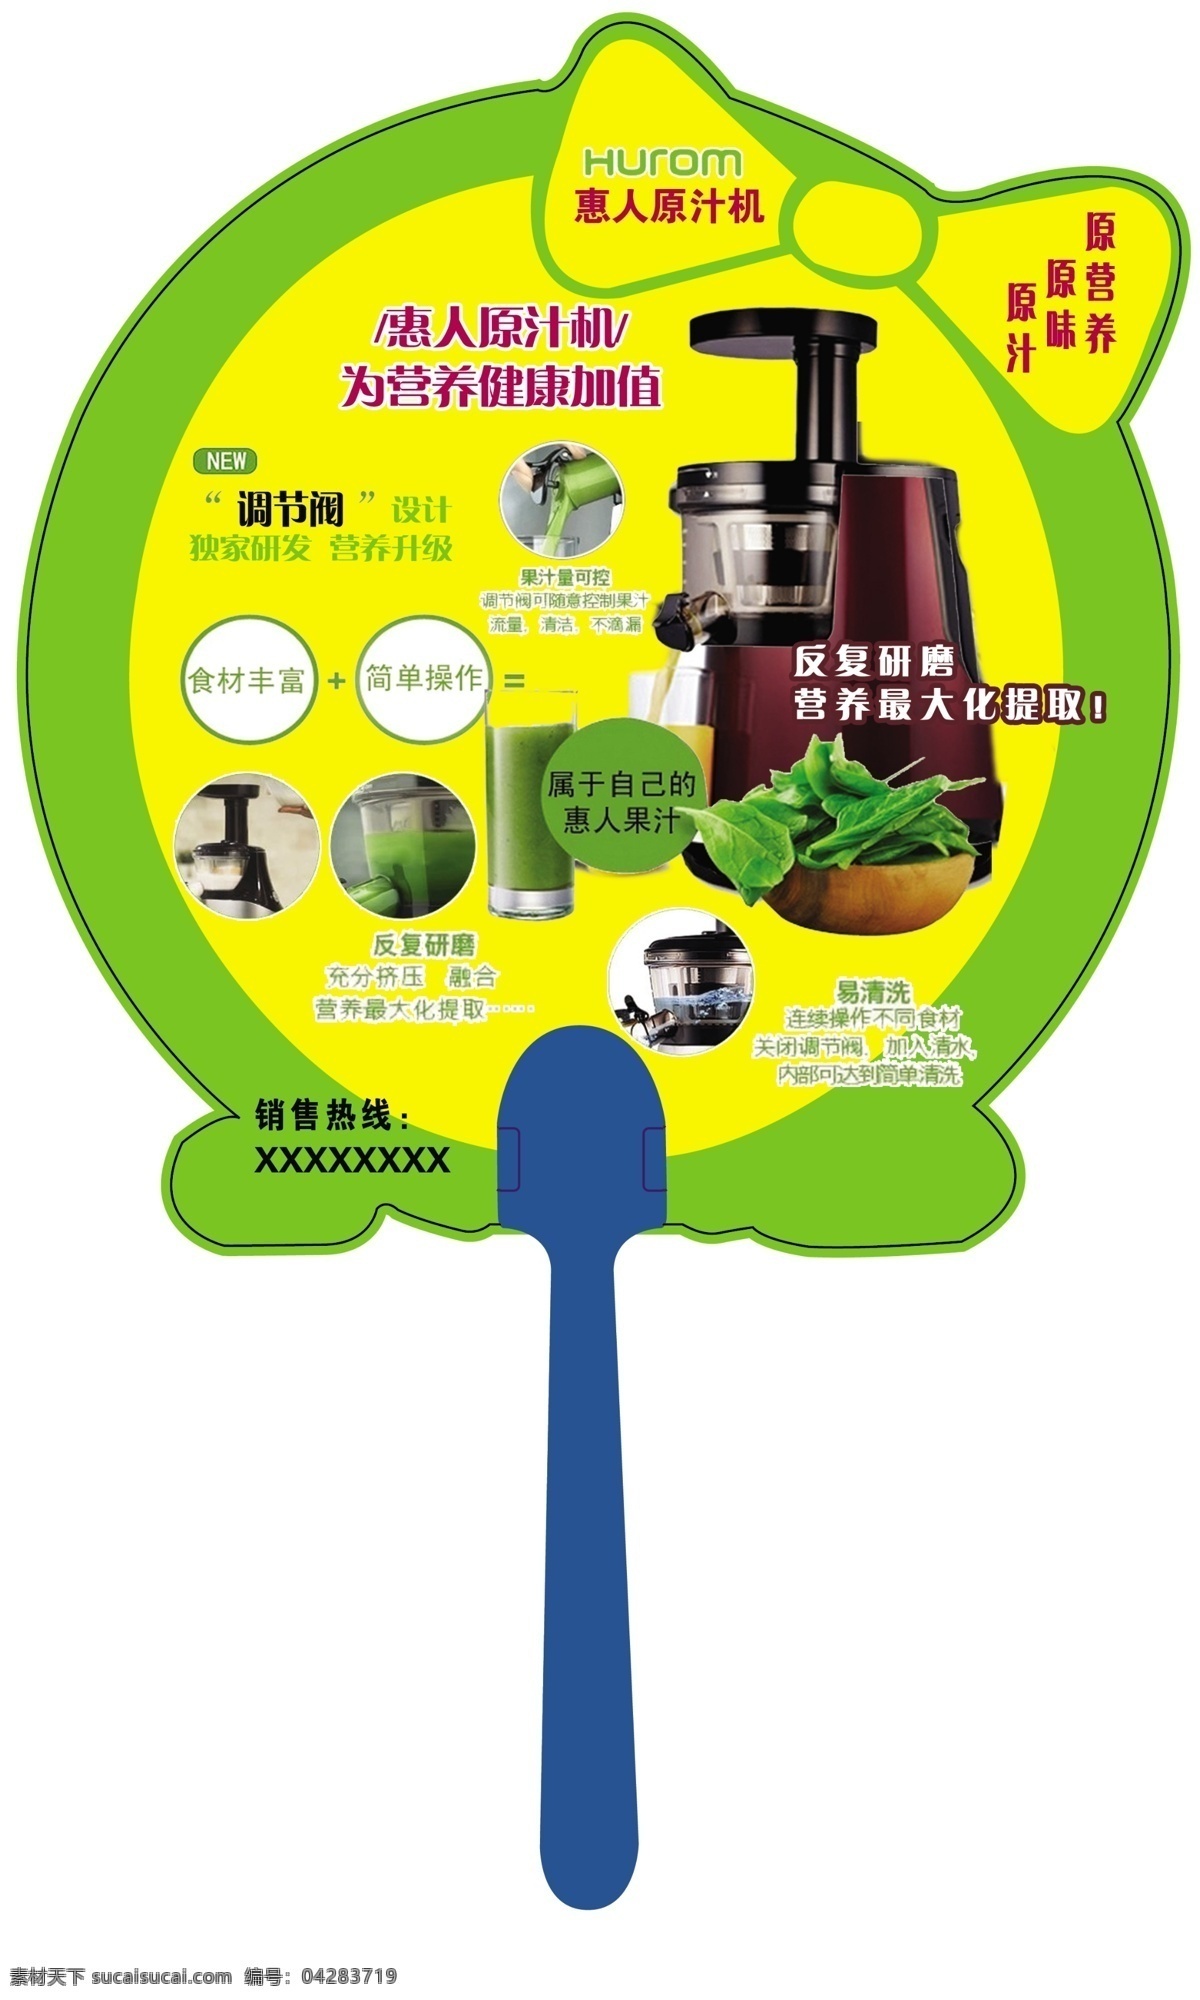 惠人 原汁 机 宣传 创意 扇面 产品宣传 创意扇面 原创设计 原创展板